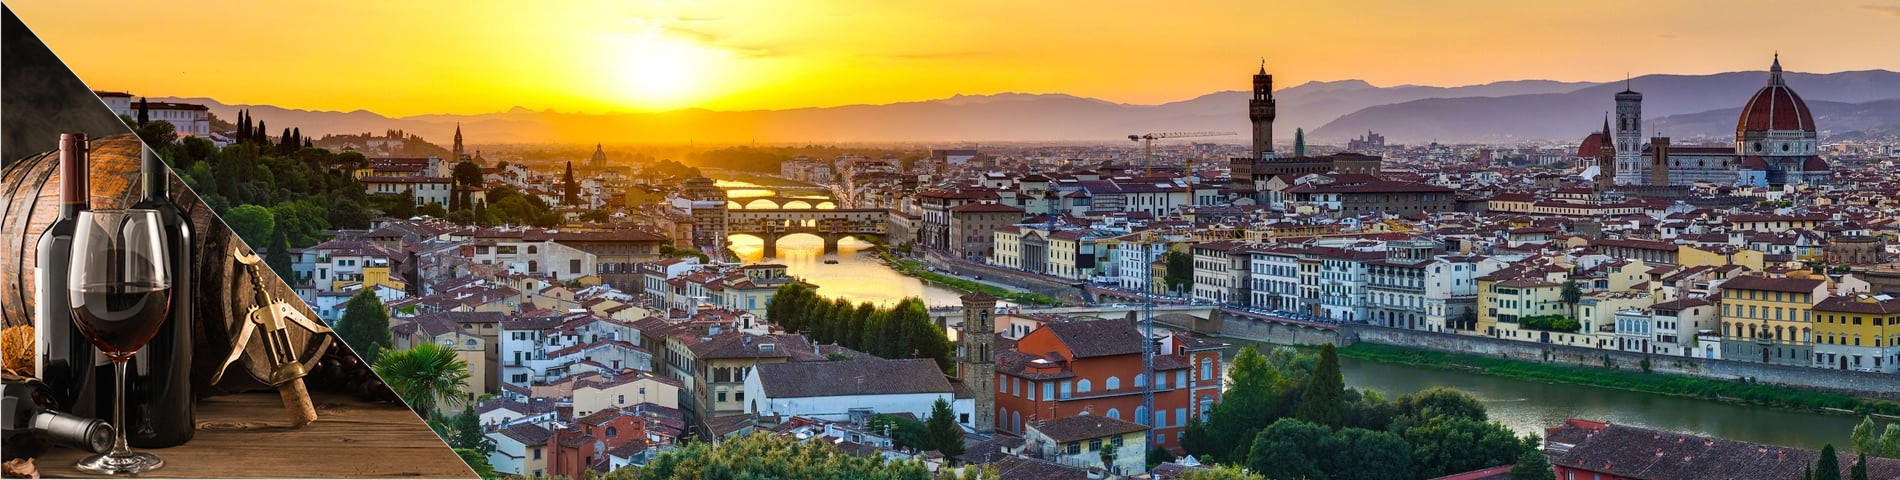 Florence - Italien & Oenologie